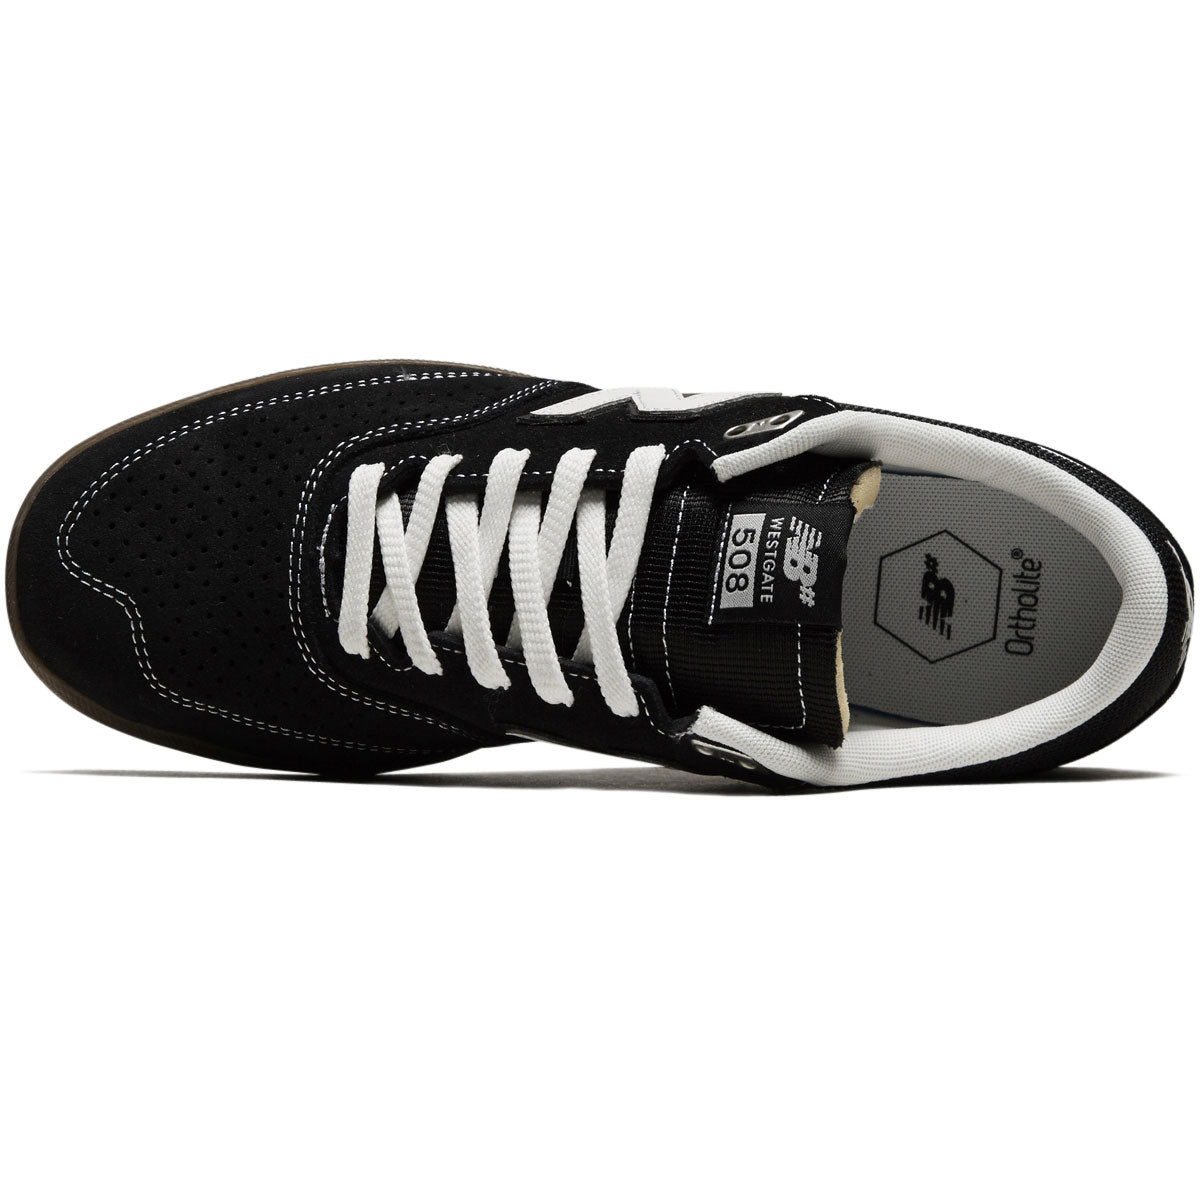 New Balance 508 Westgate Shoes - Black/Gum/White image 3